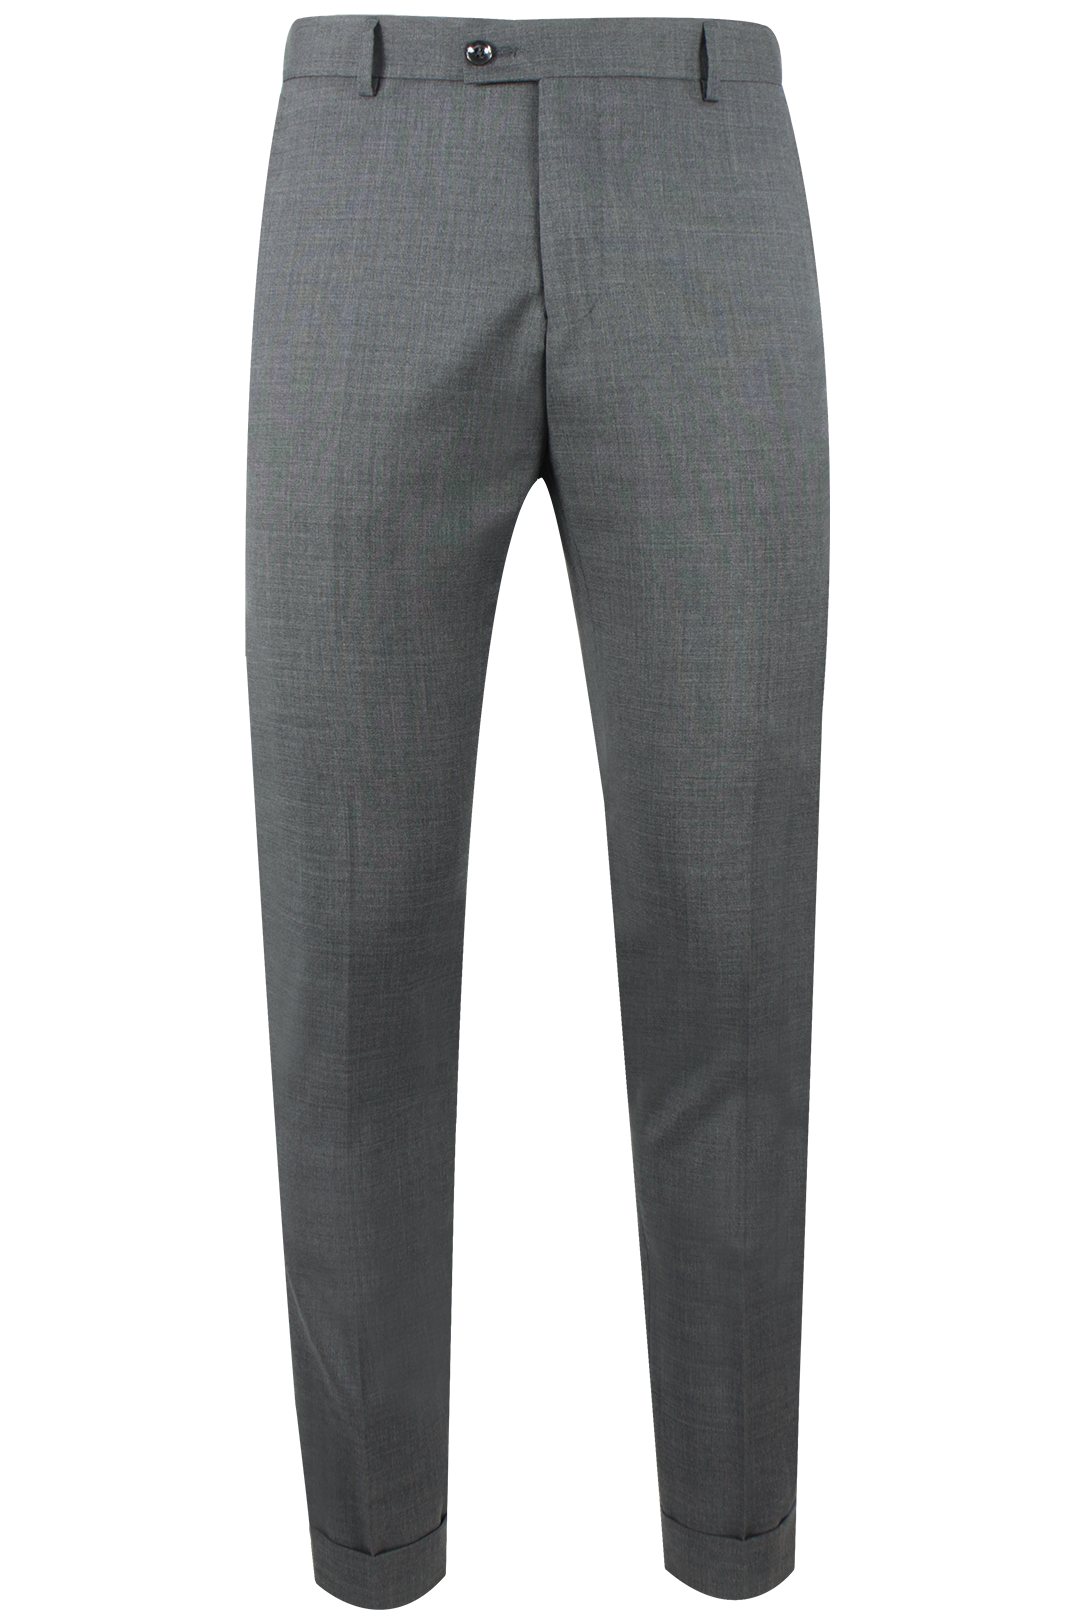 Pantalone risvolto tela di lana grigio medio